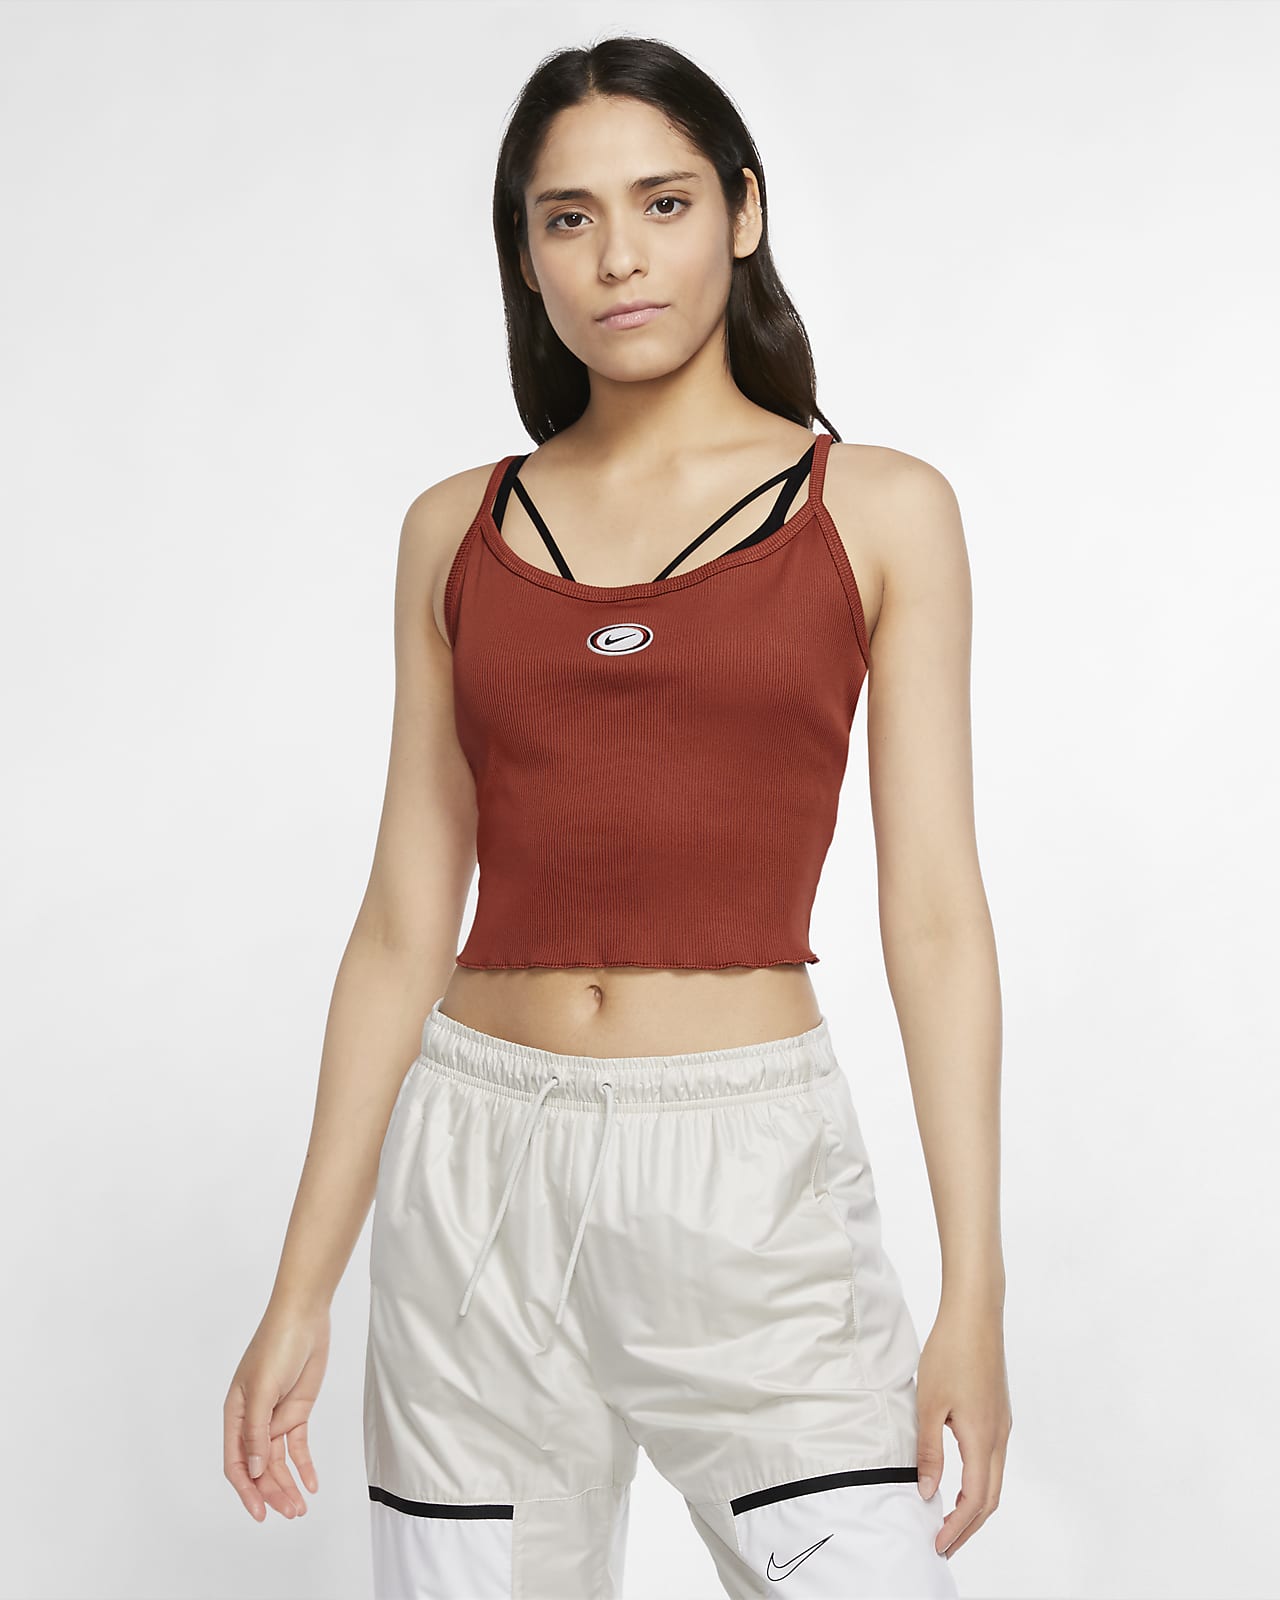 Nike Sportswear Women's Cropped Tank Top. Nike.com